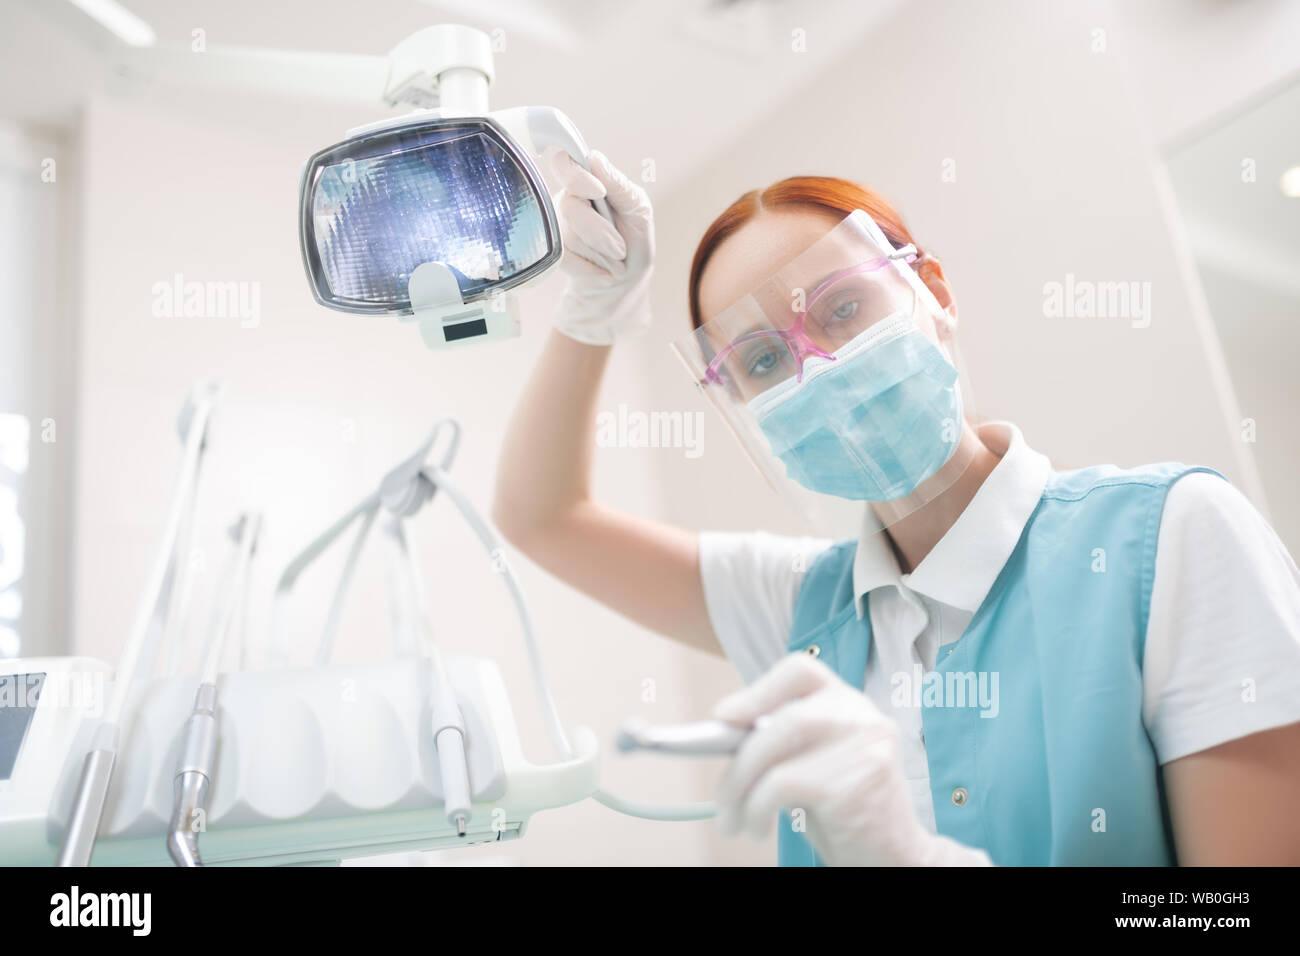 Dentiste femelle portant des lunettes examining patient Banque D'Images